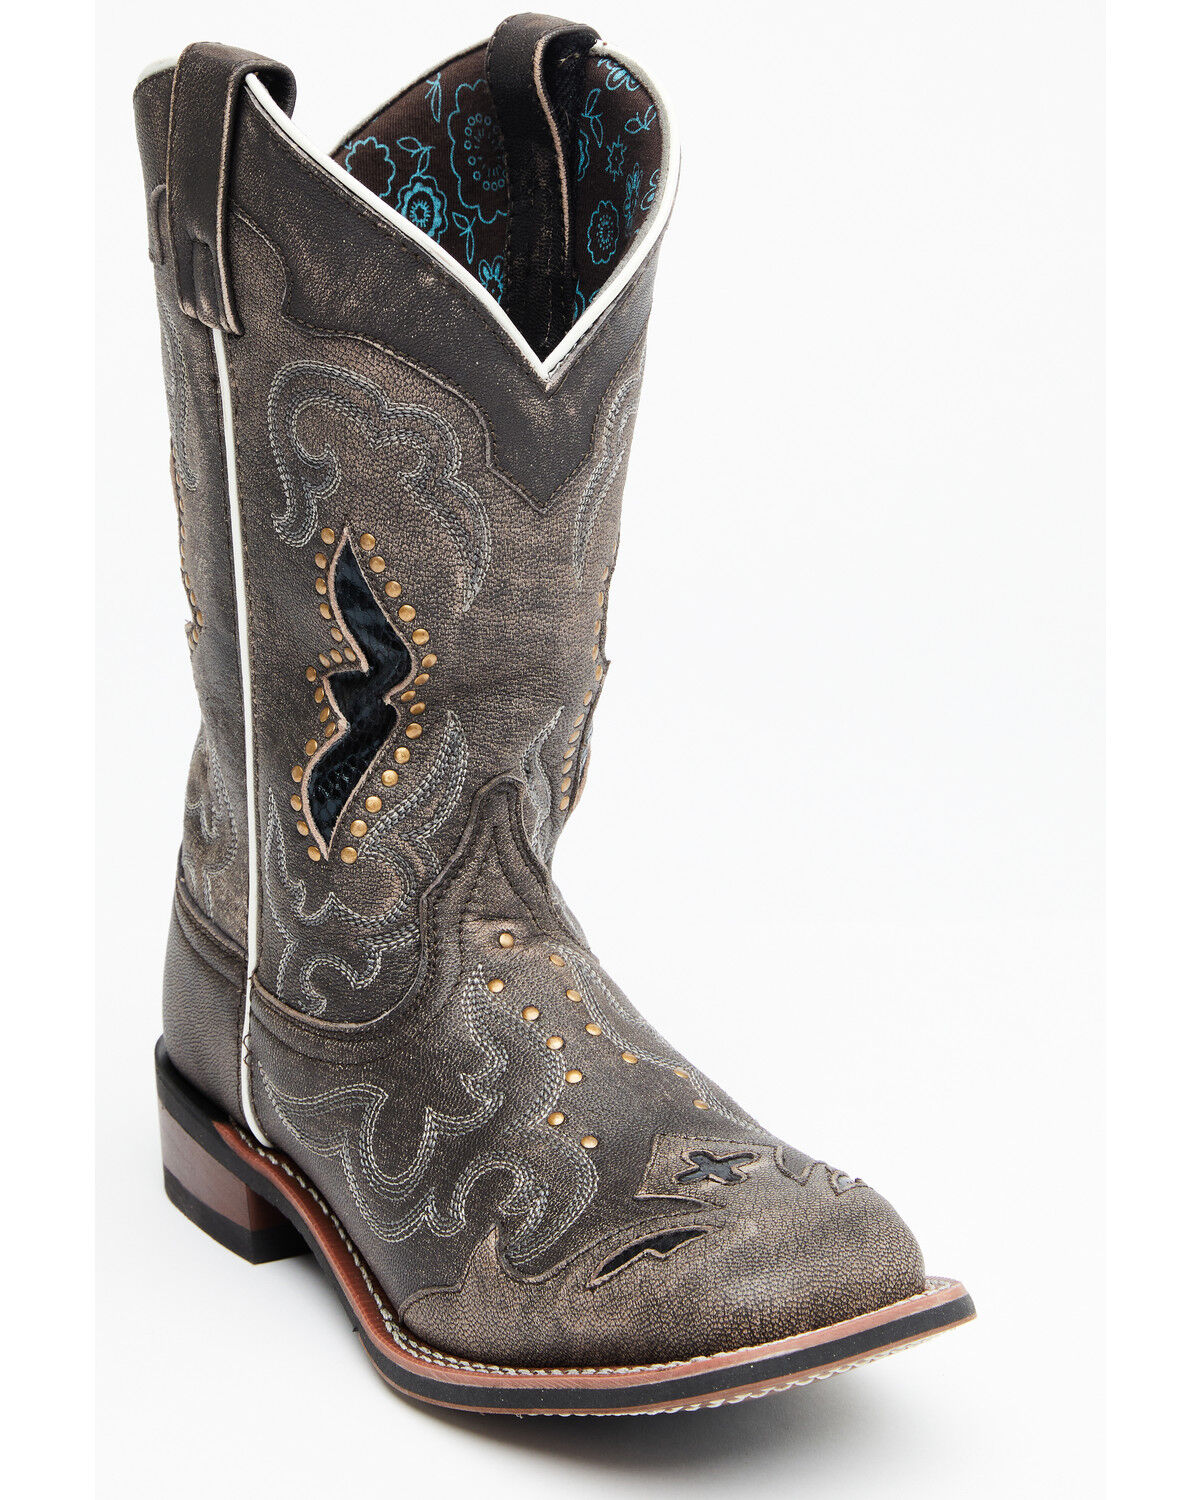 women's western boots size 11 wide